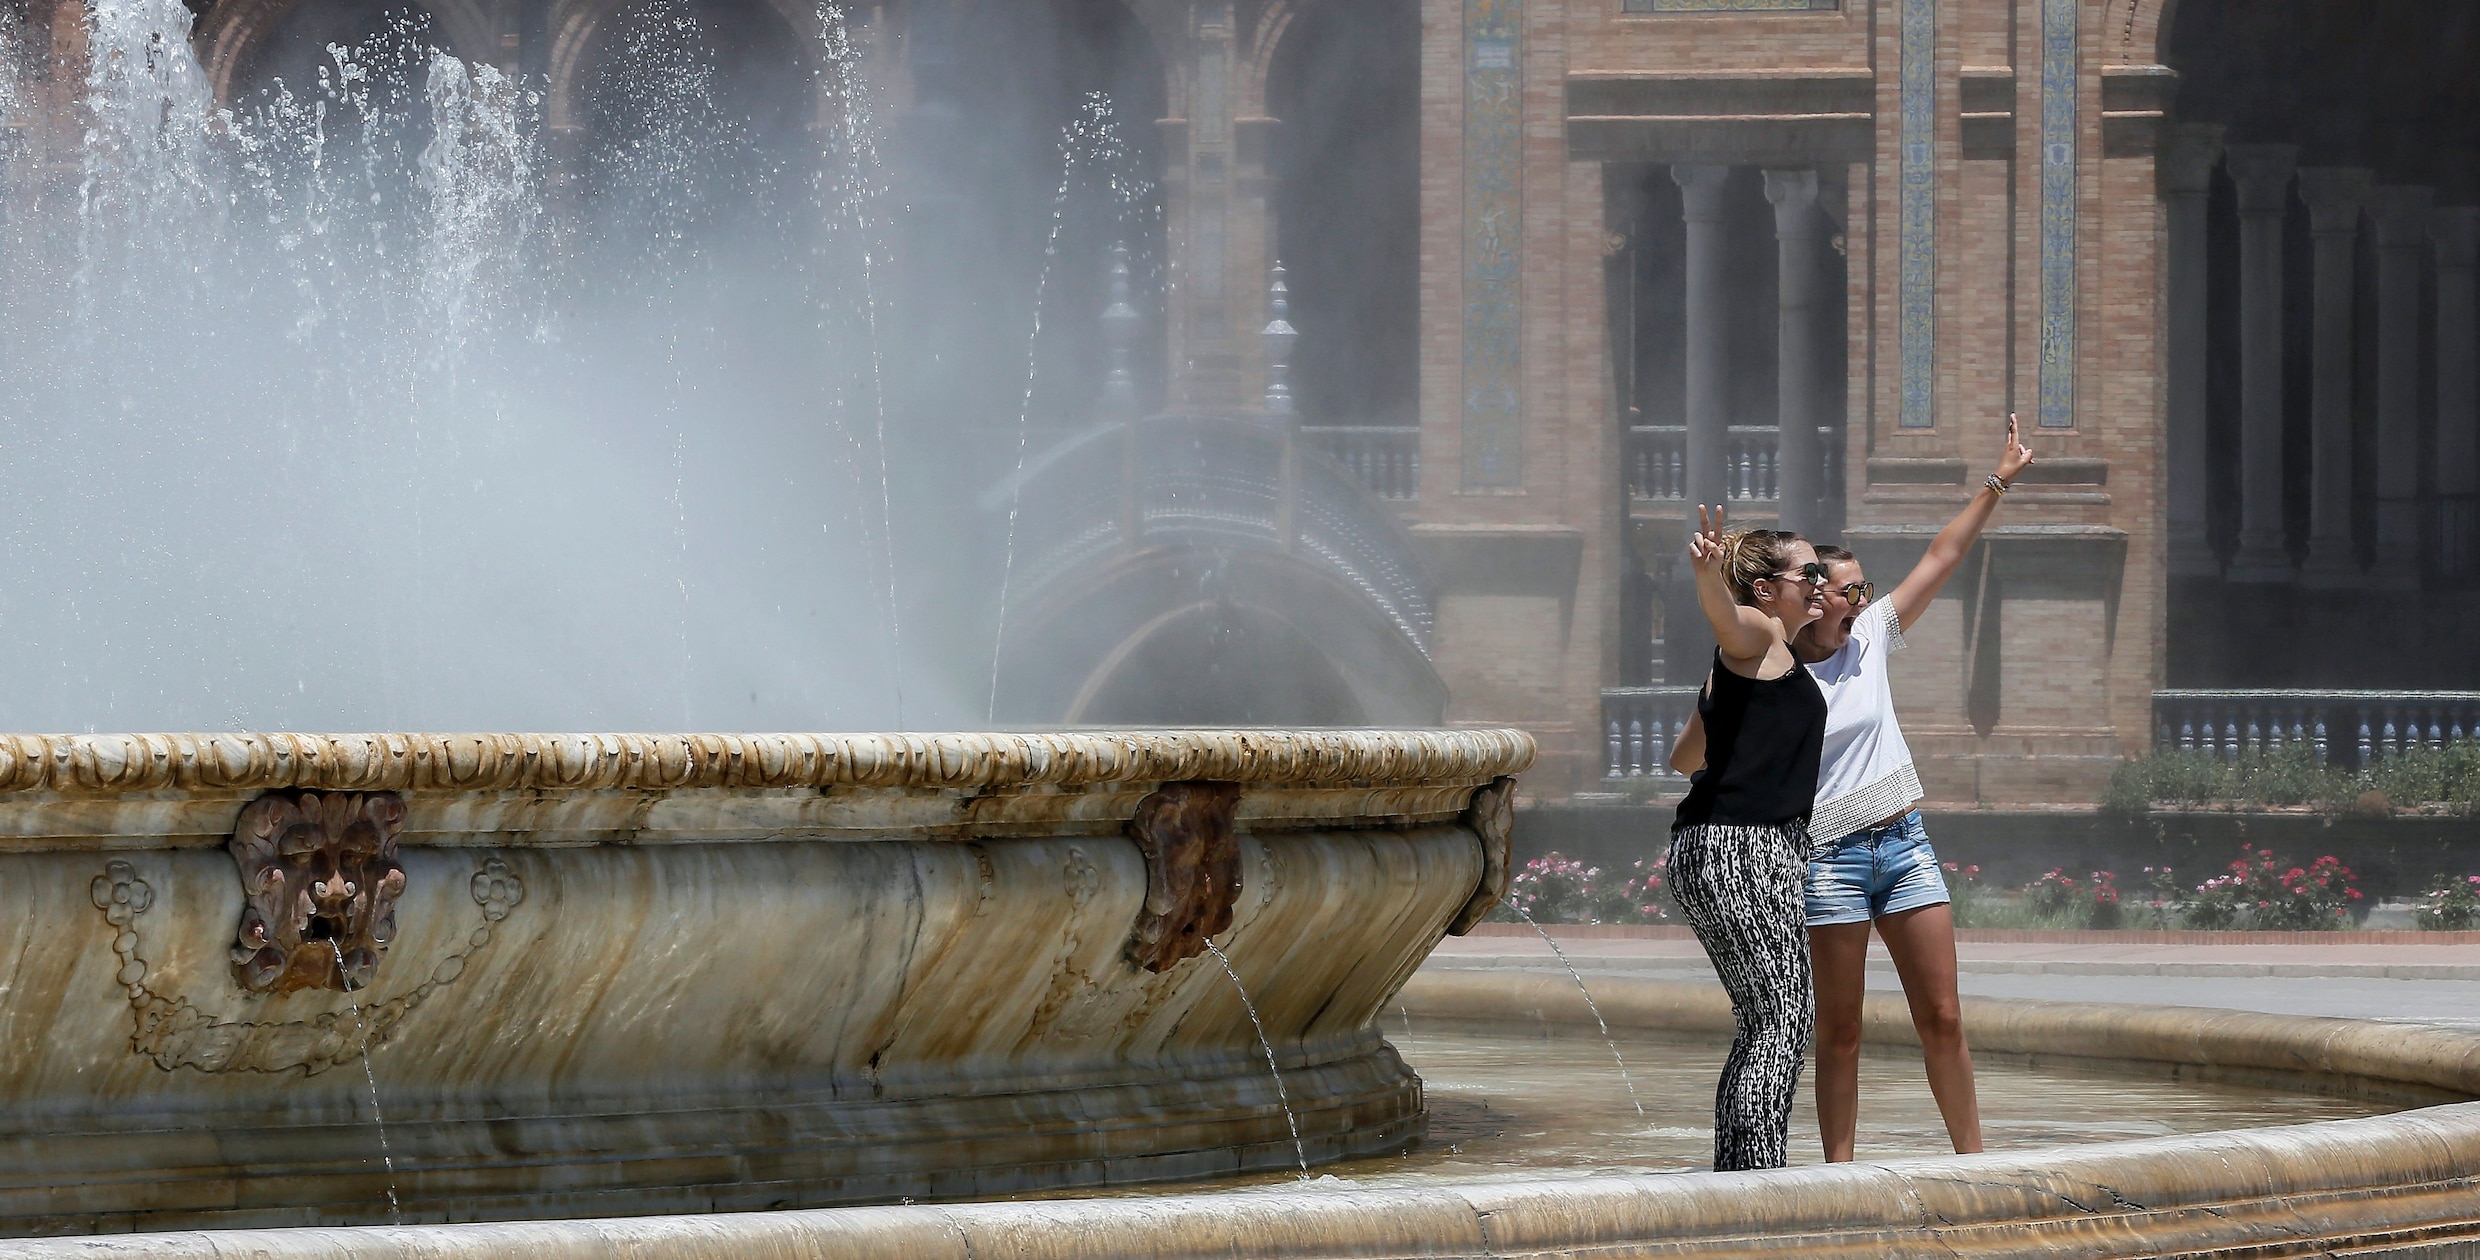 Spanje kreunt onder hittegolf, temperaturen tot 42 graden verwacht